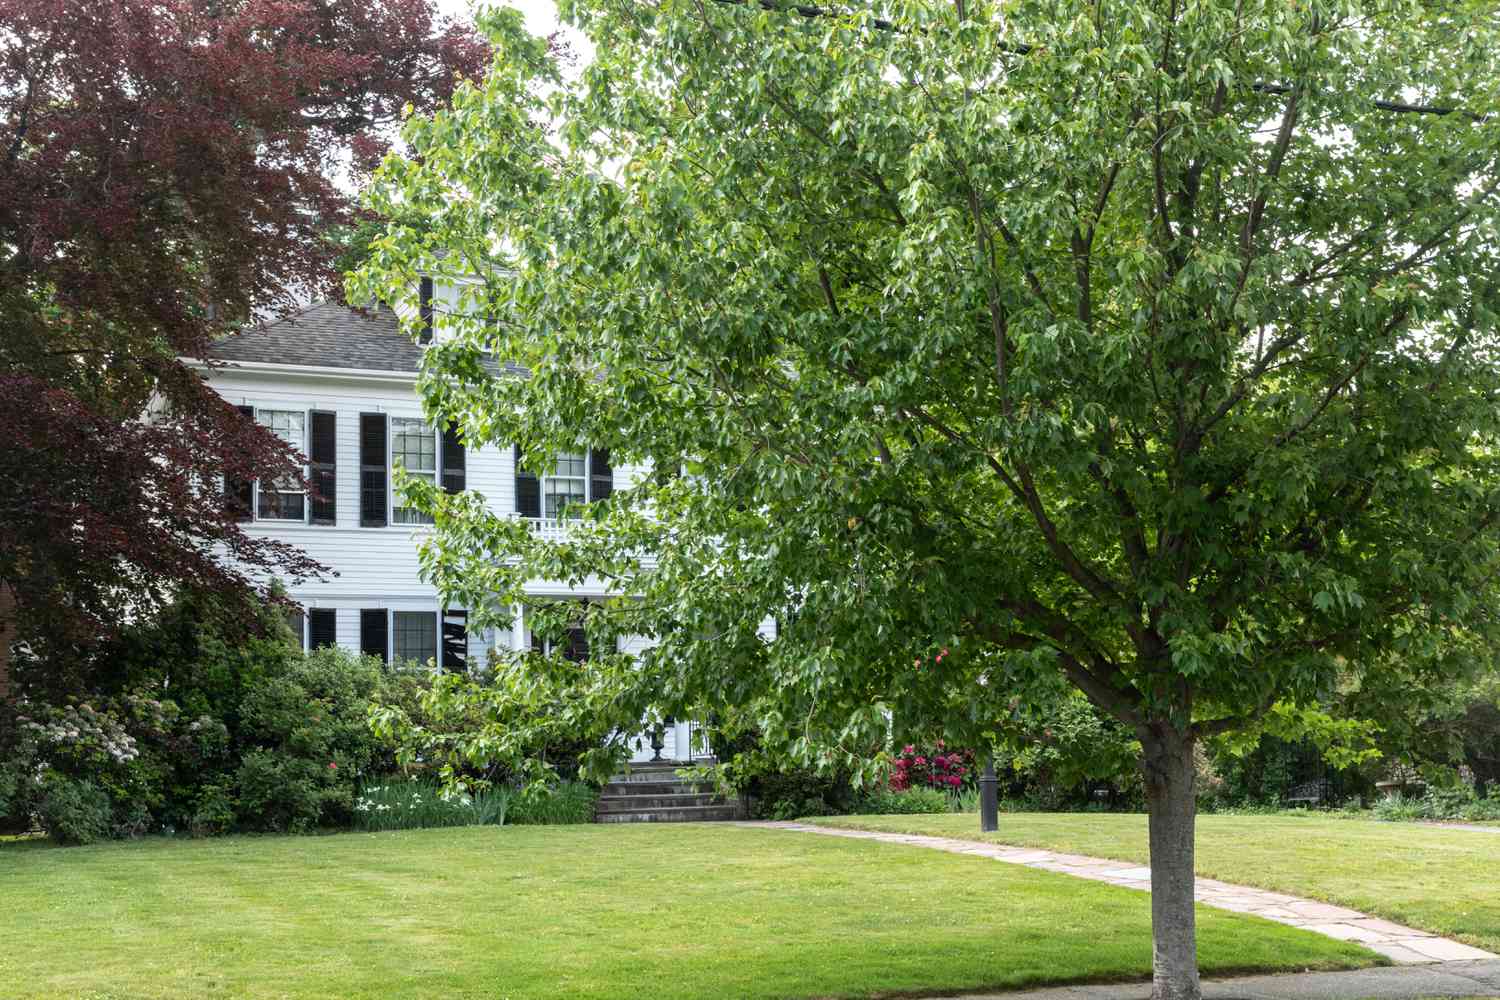 Baum vor großem weißen Haus mit ausgedehntem Vorgarten